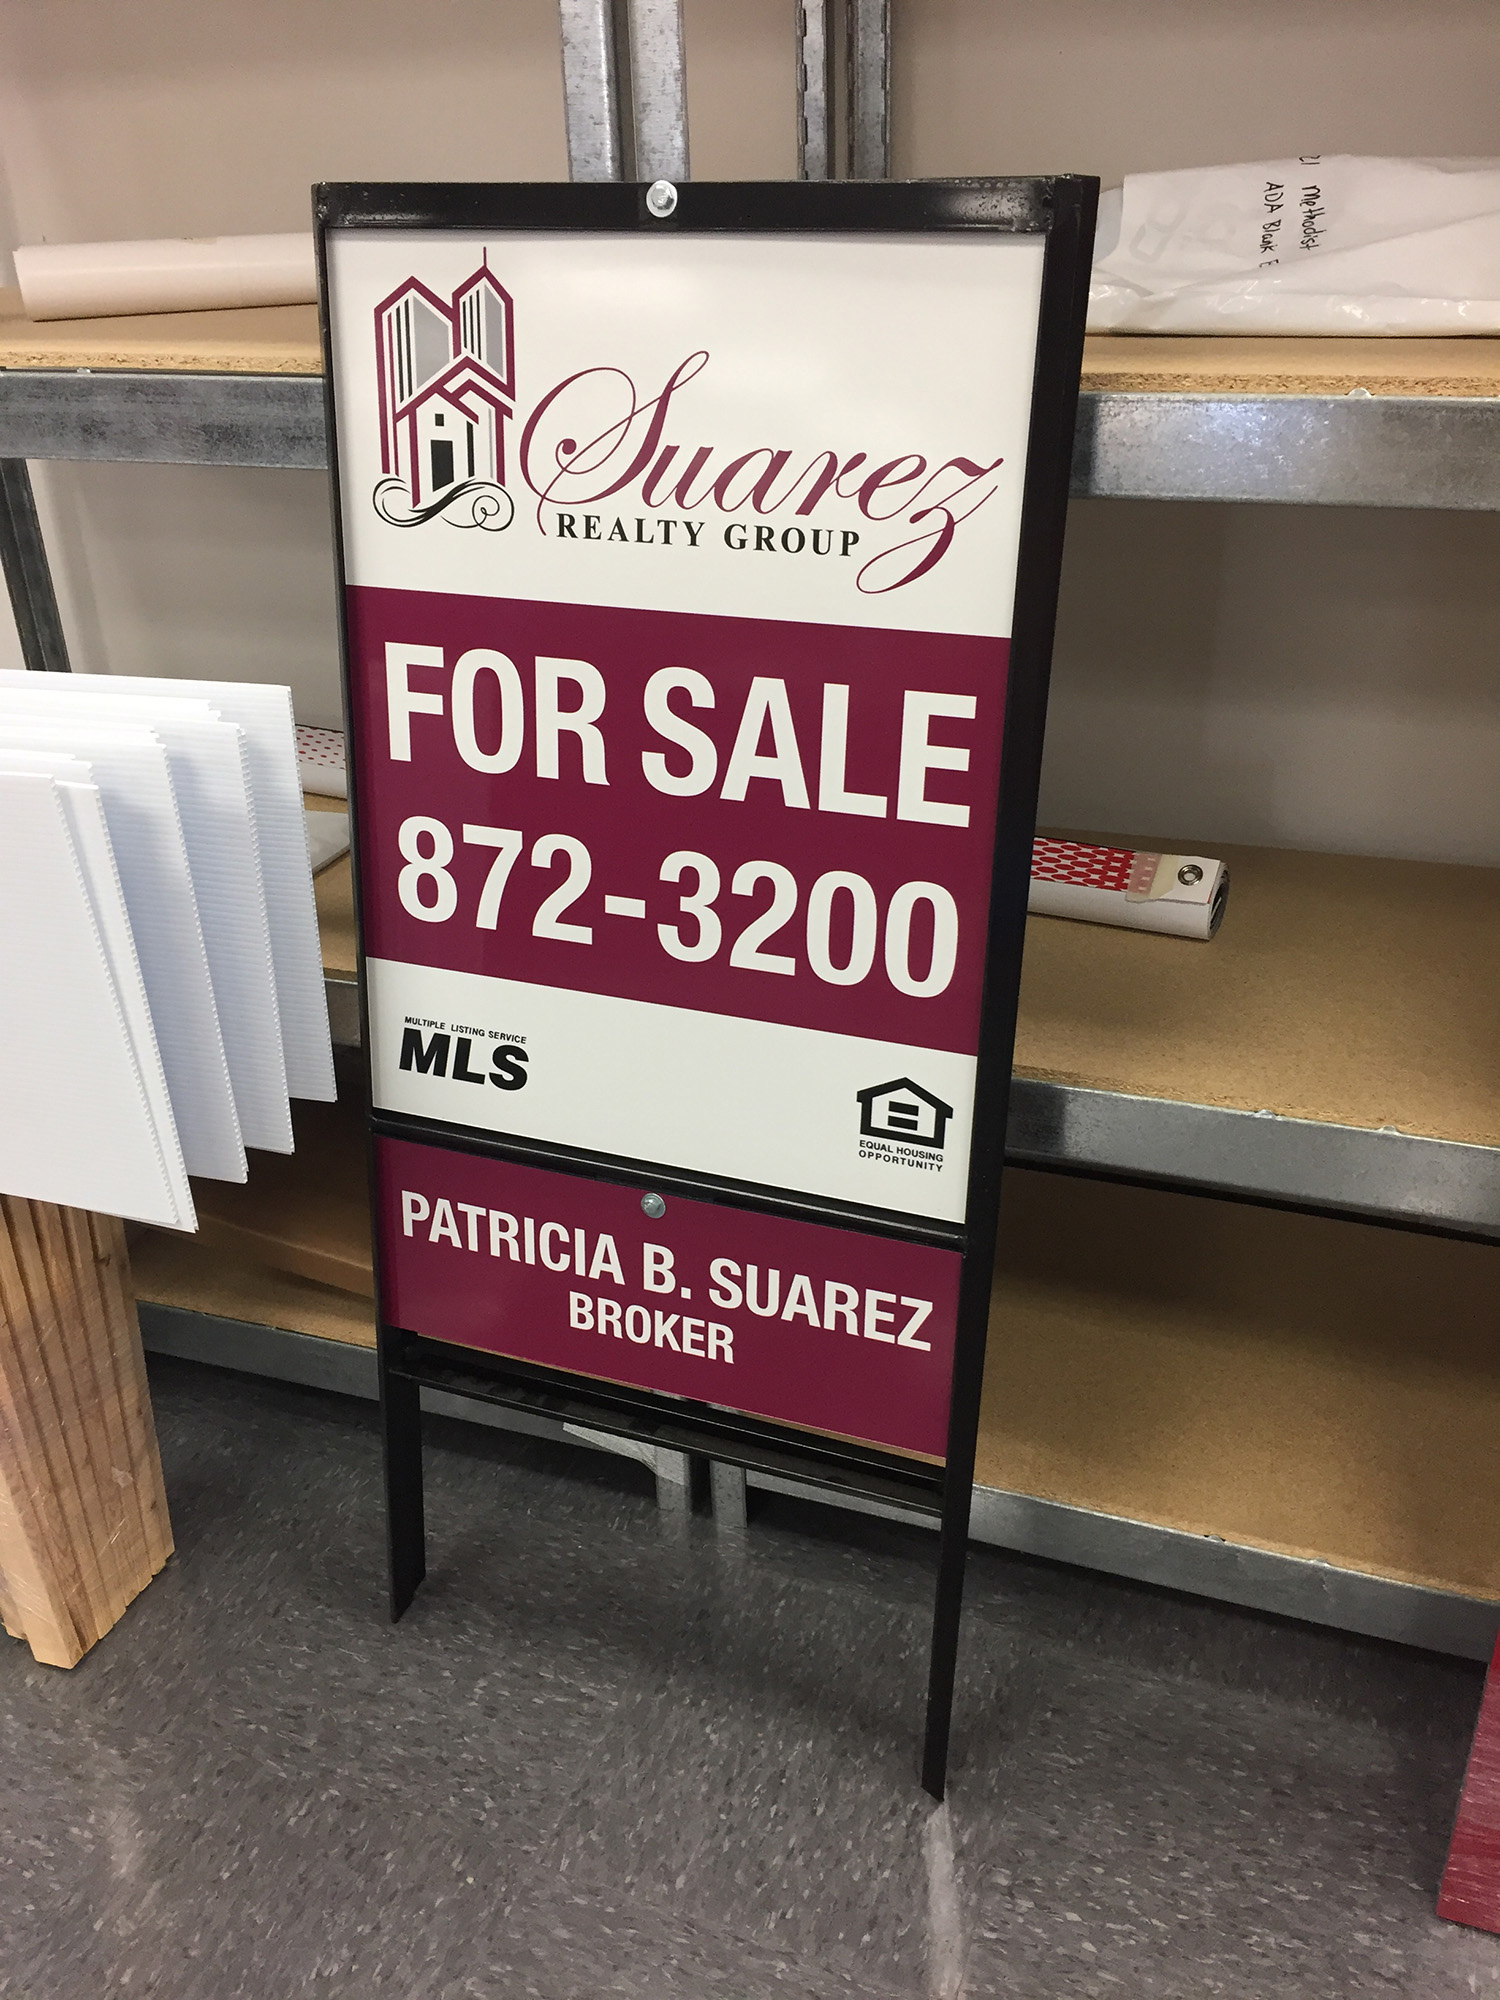 frames-and-hardware-real-estate-sign